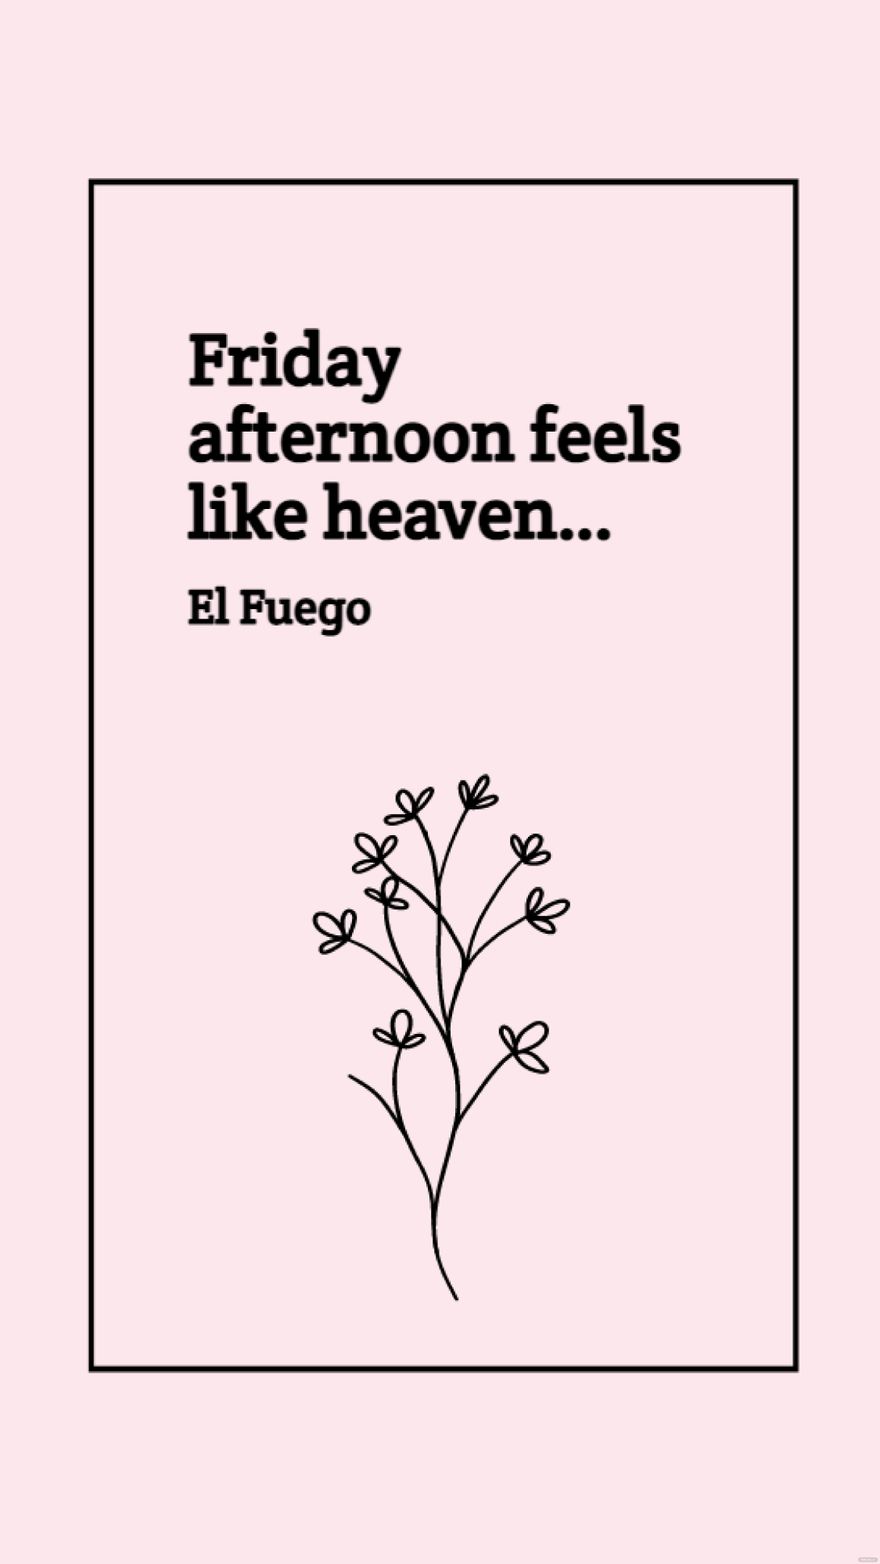 El Fuego - Friday afternoon feels like heaven…